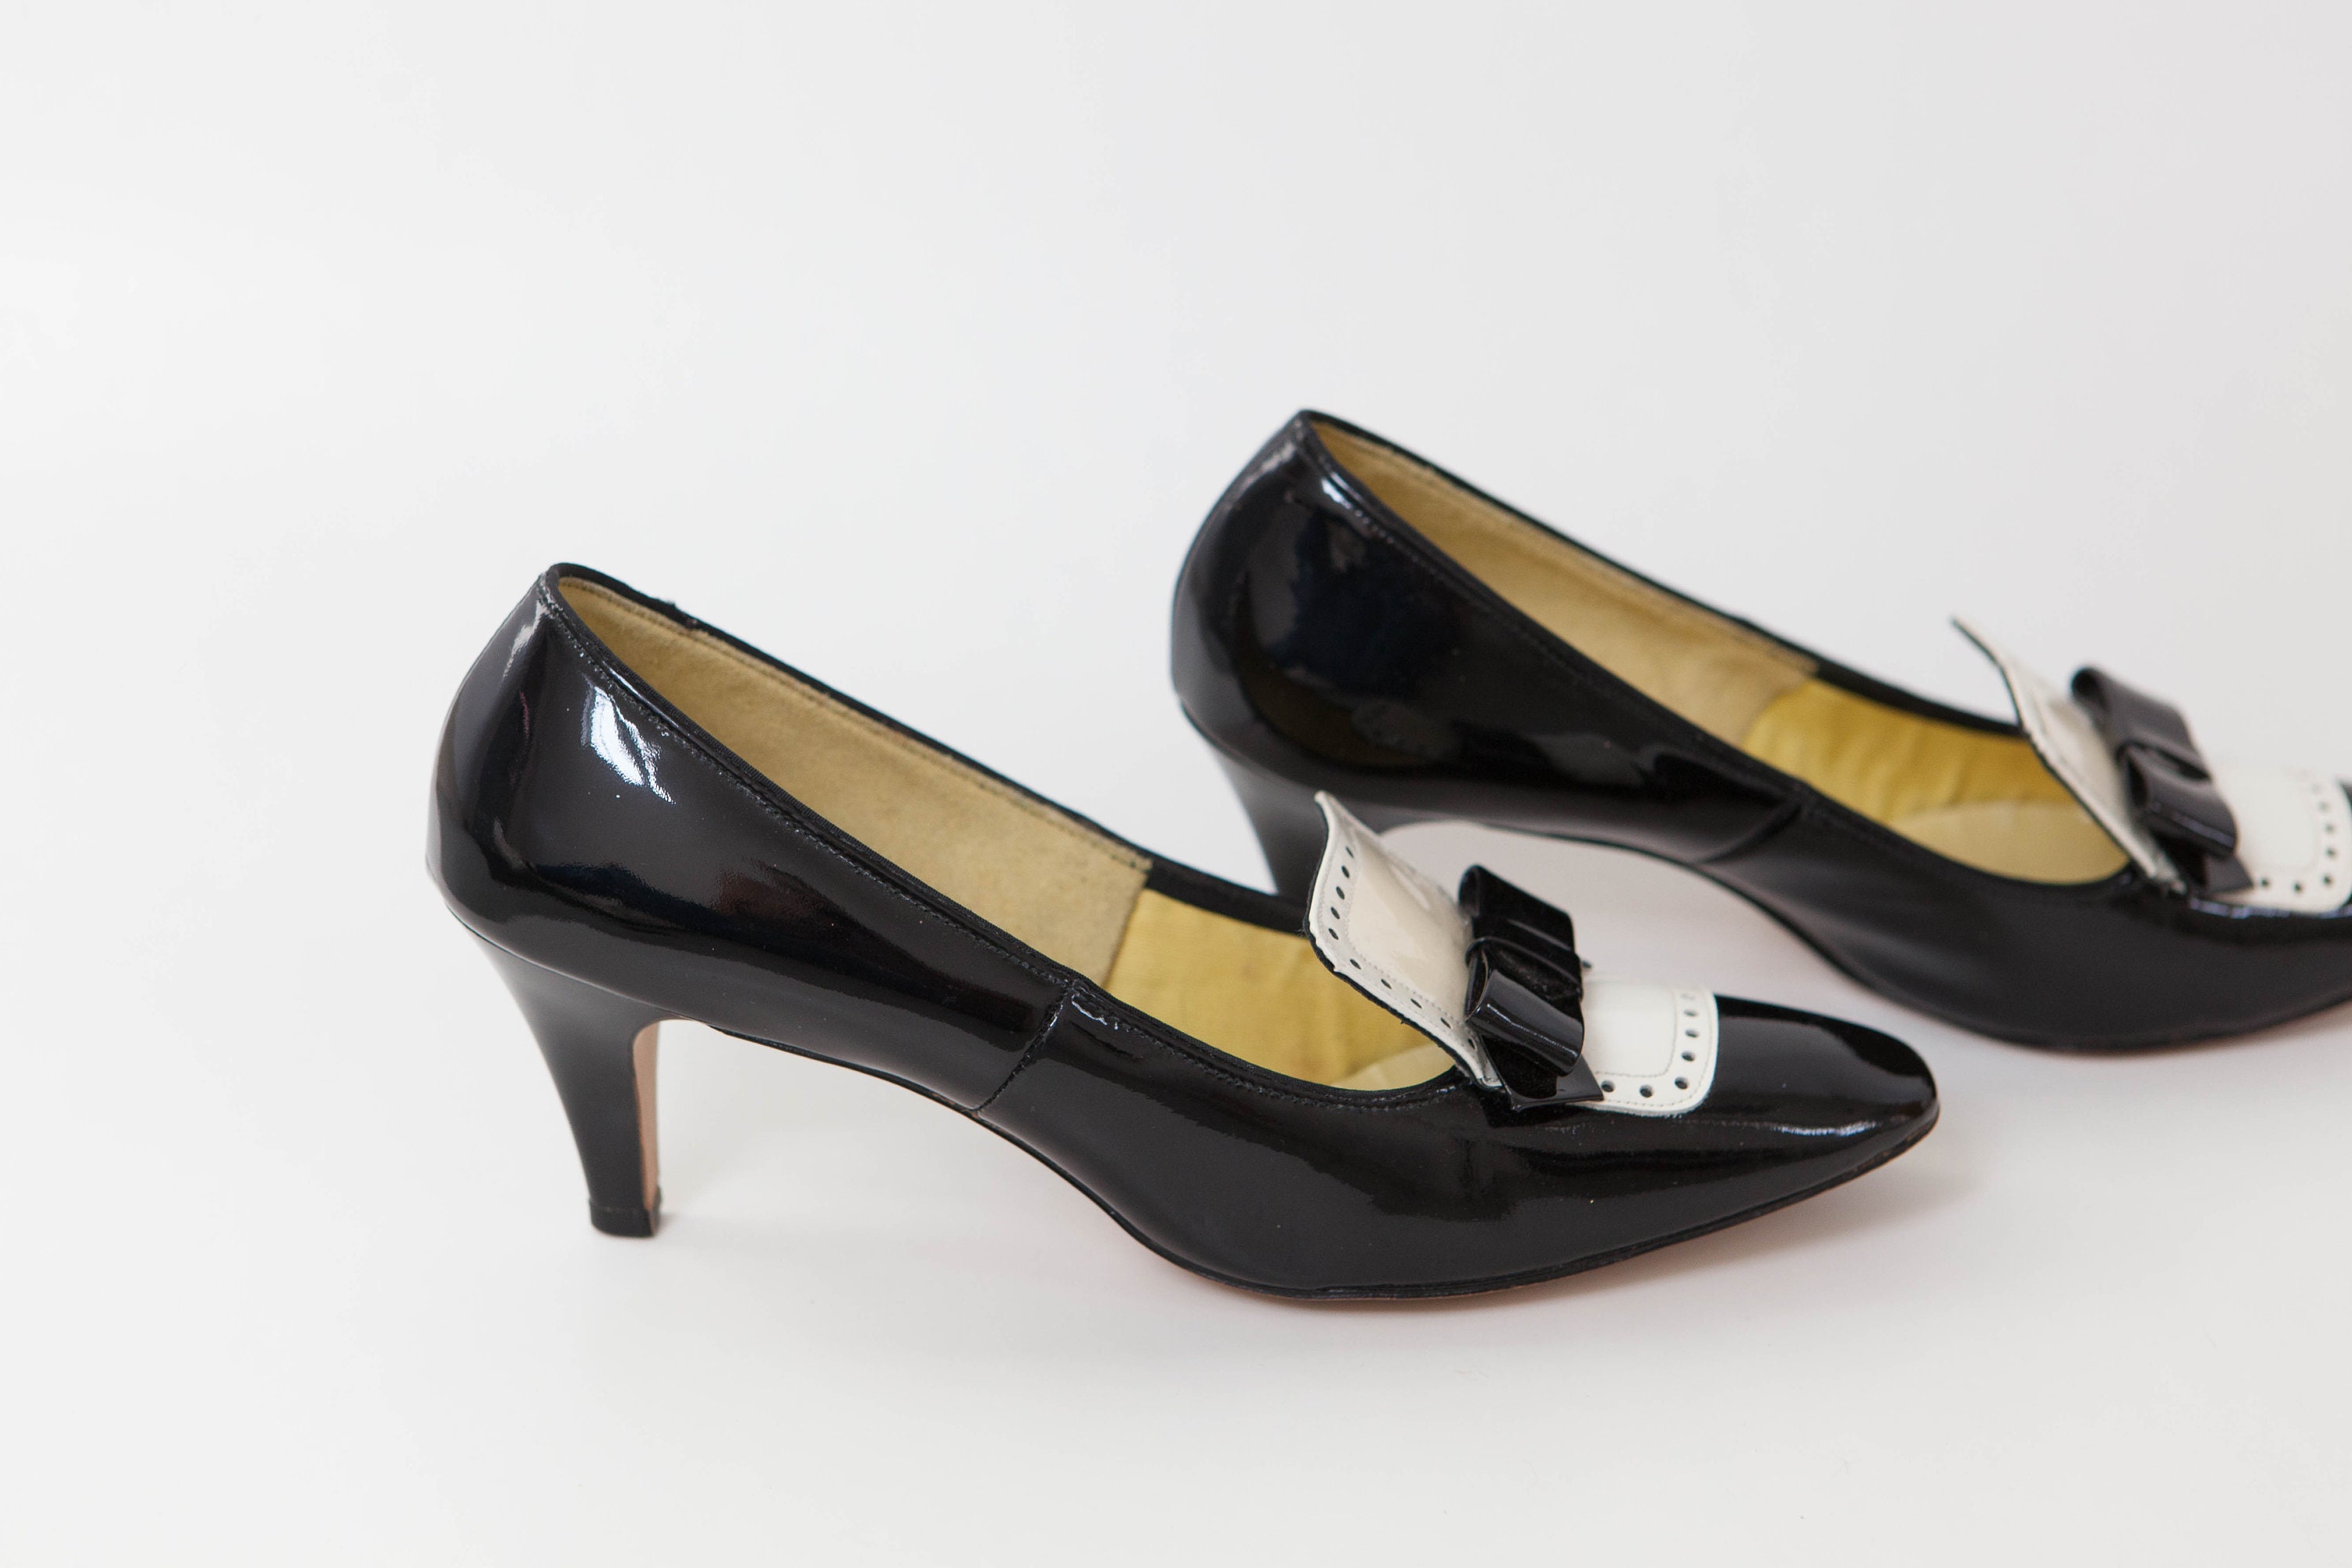 Black and White Tuxedo Pumps Saddle Shoe Heels Patent | Etsy